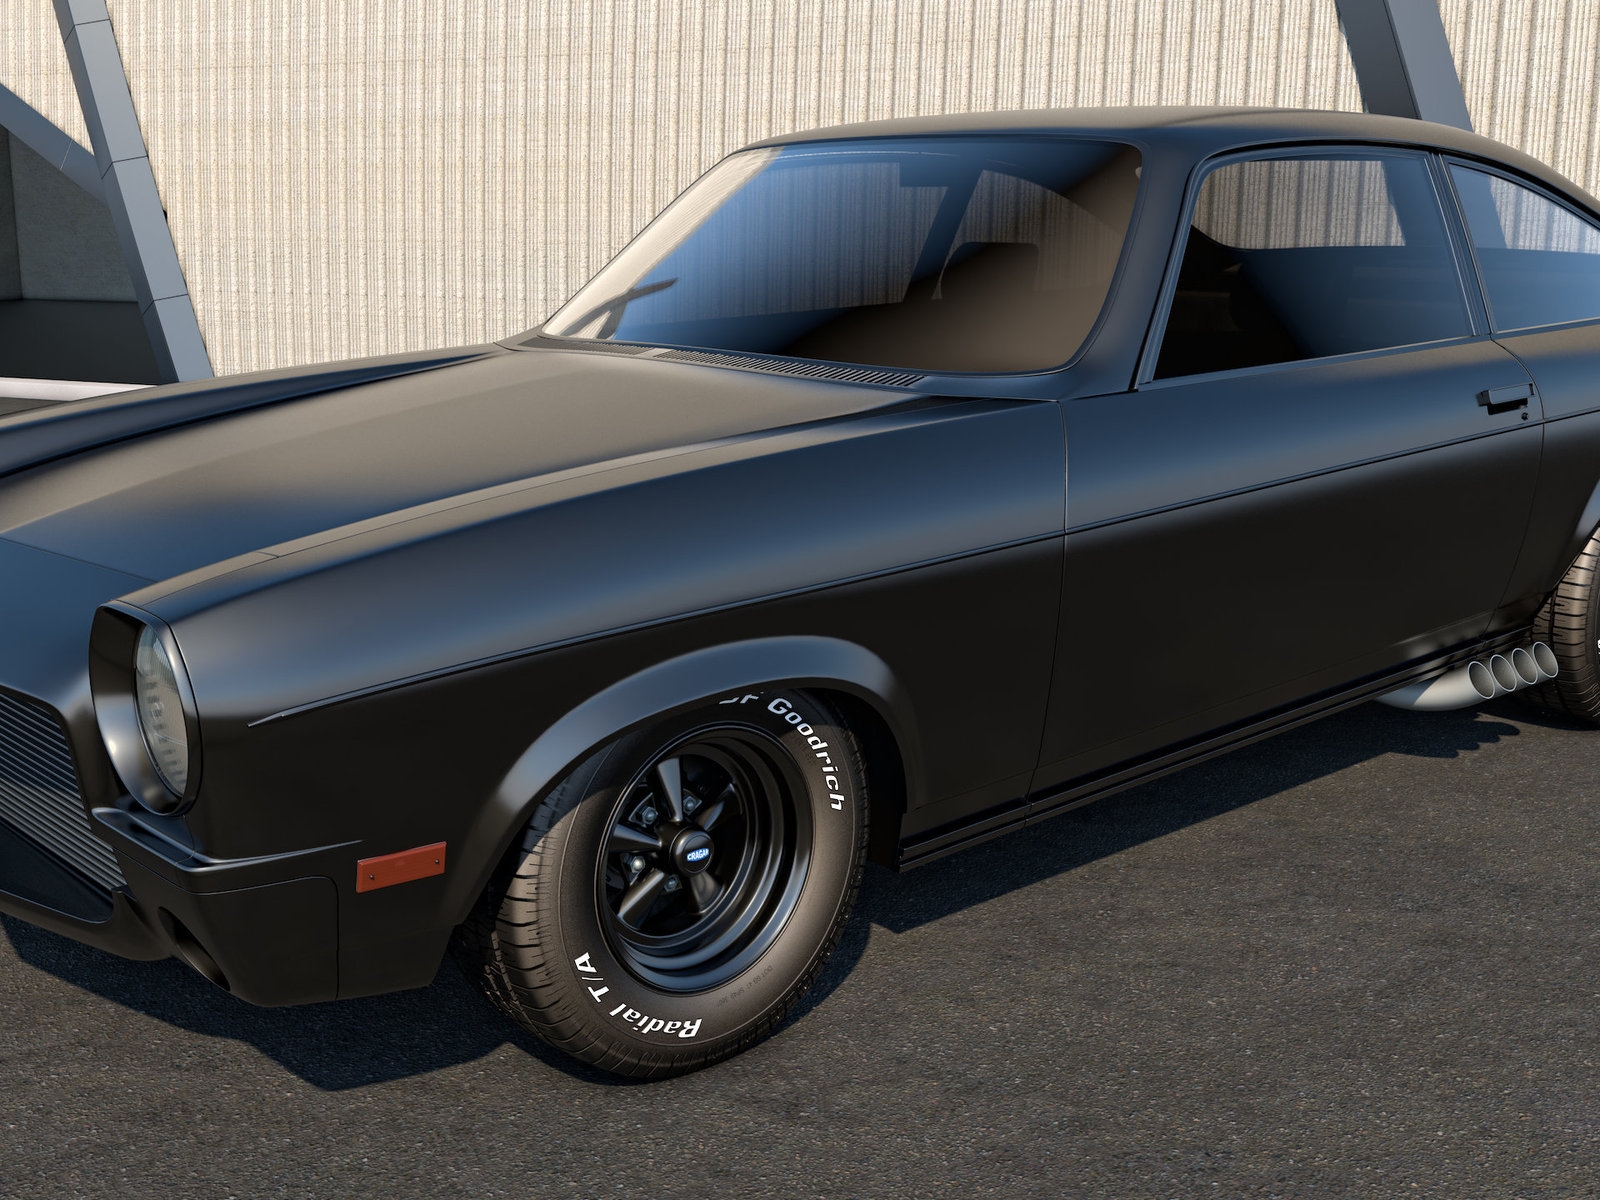 Black Chevrolet Vega for 1600 x 1200 resolution